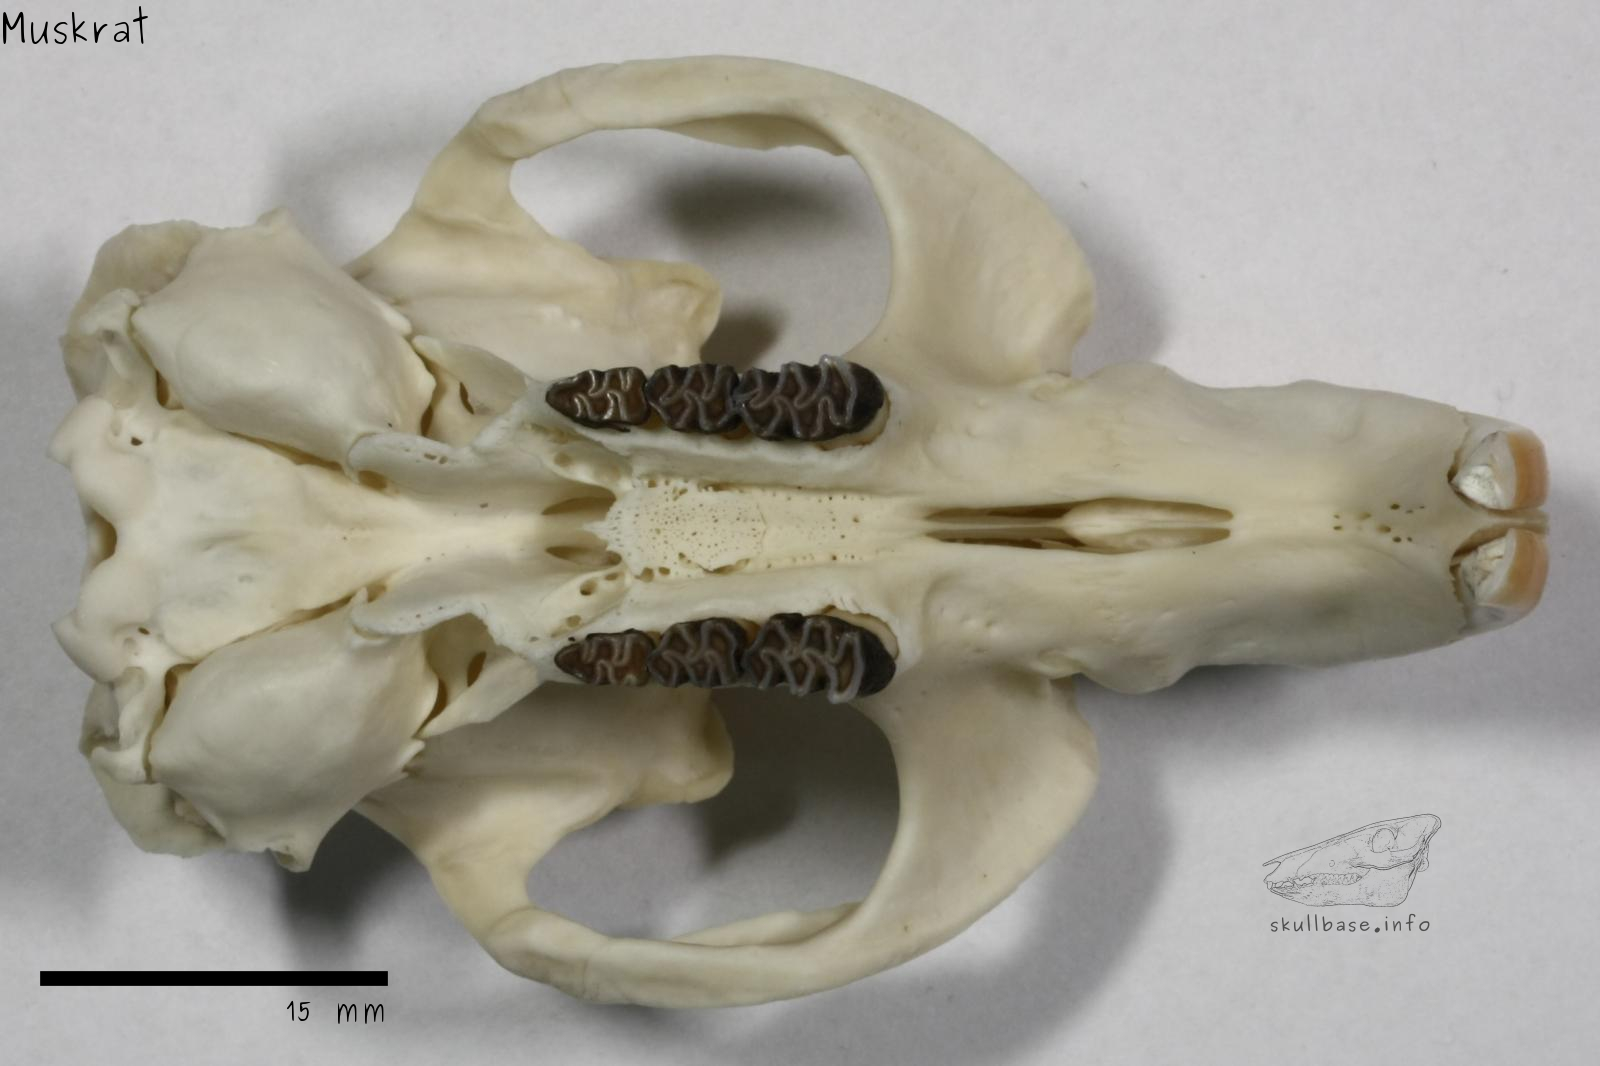 Muskrat (Ondatra zibethicus) skull ventral view